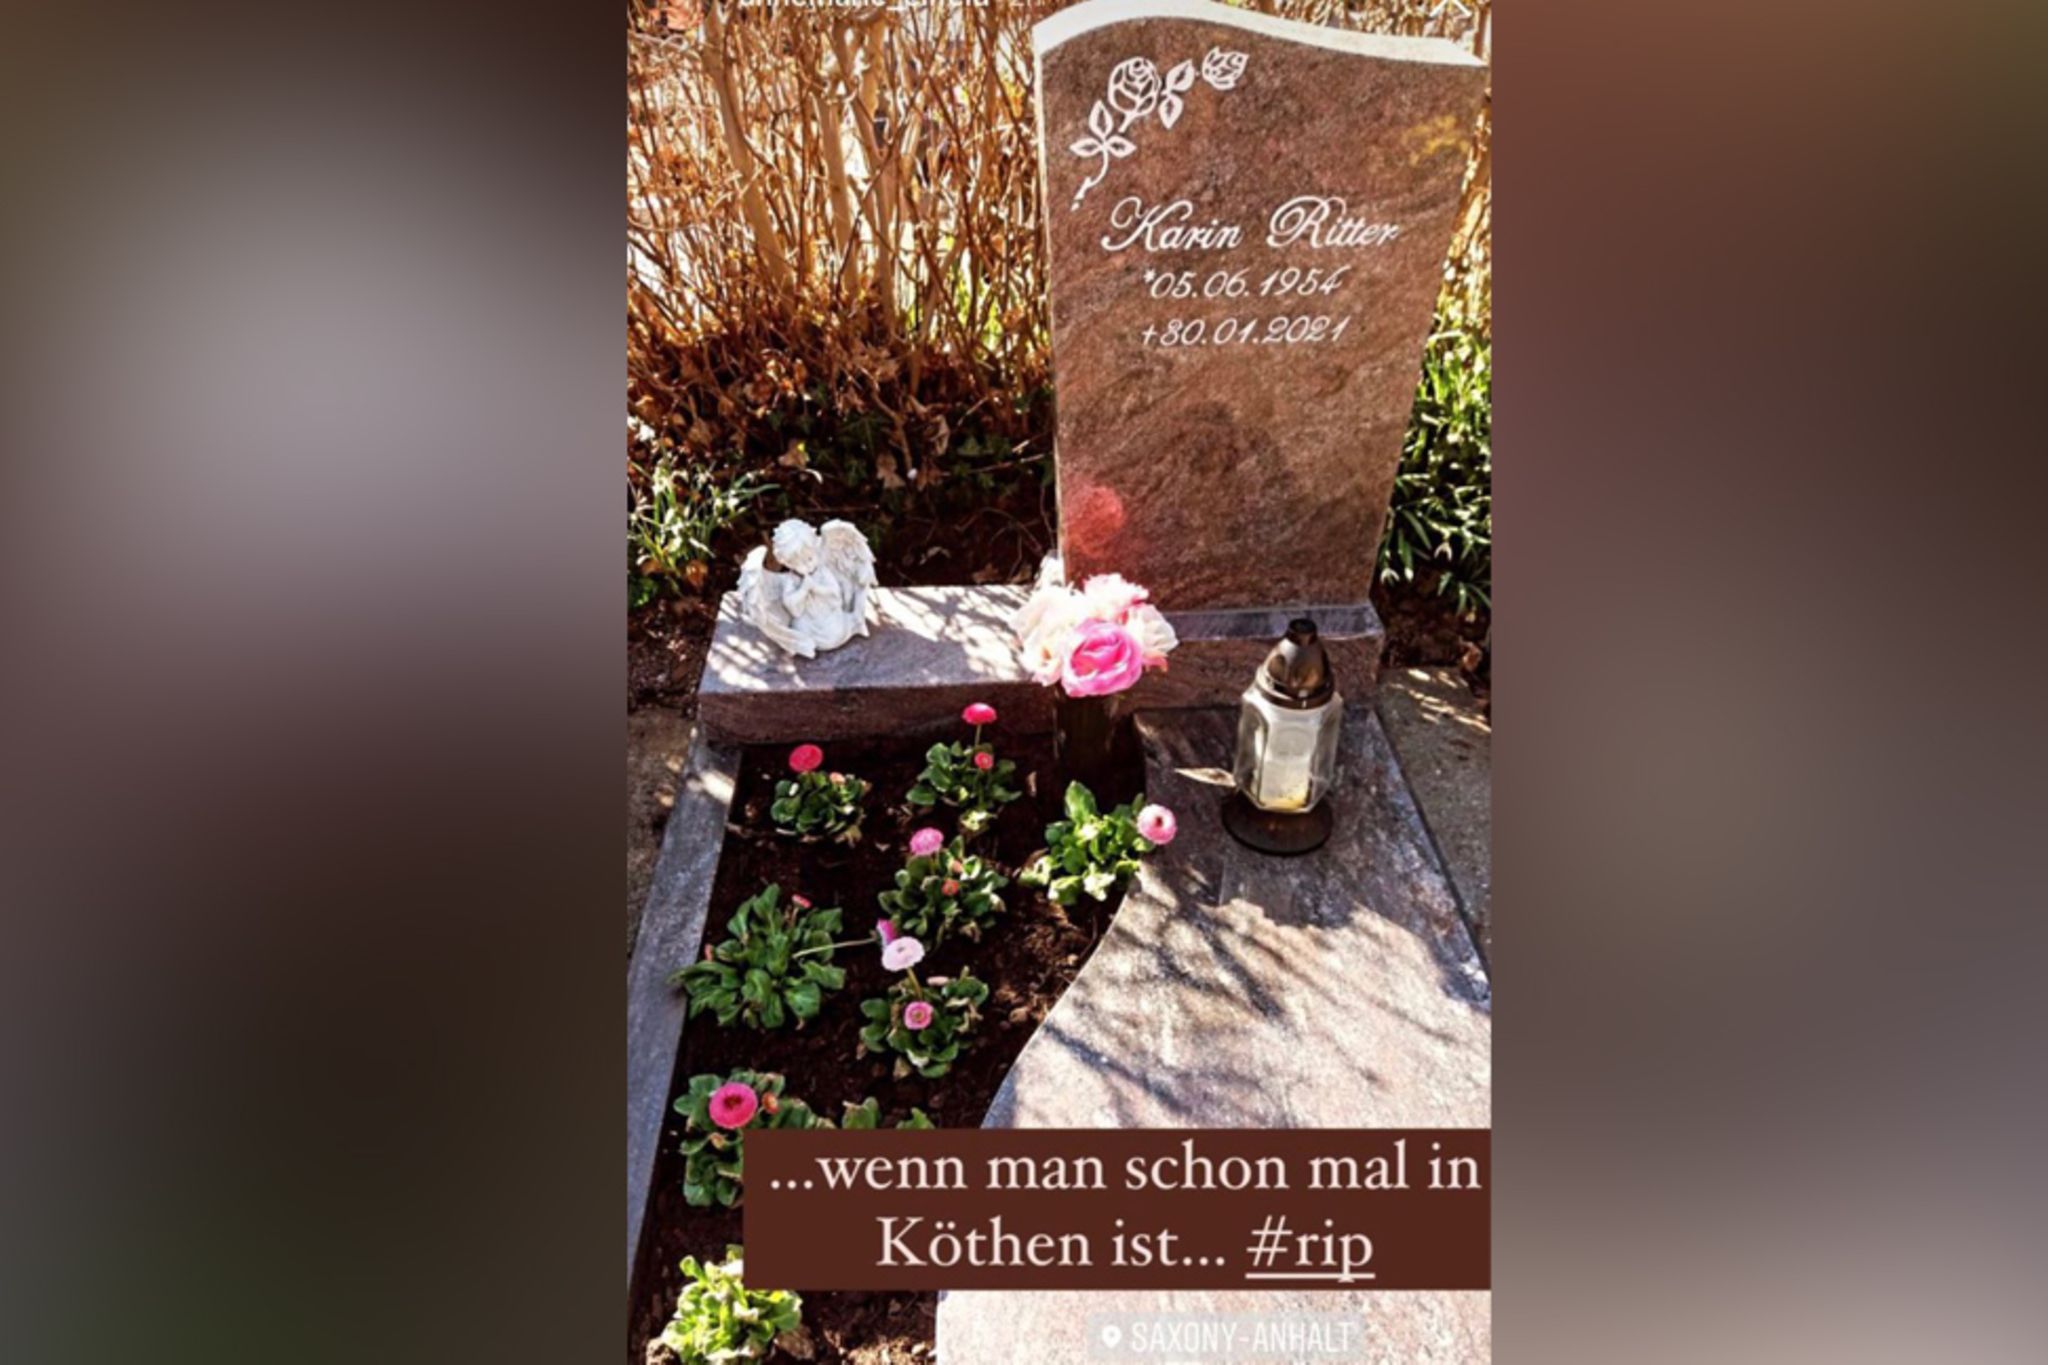 Fans fassungslos: Annemarie Eilfeld trauert am Grab von Nazi